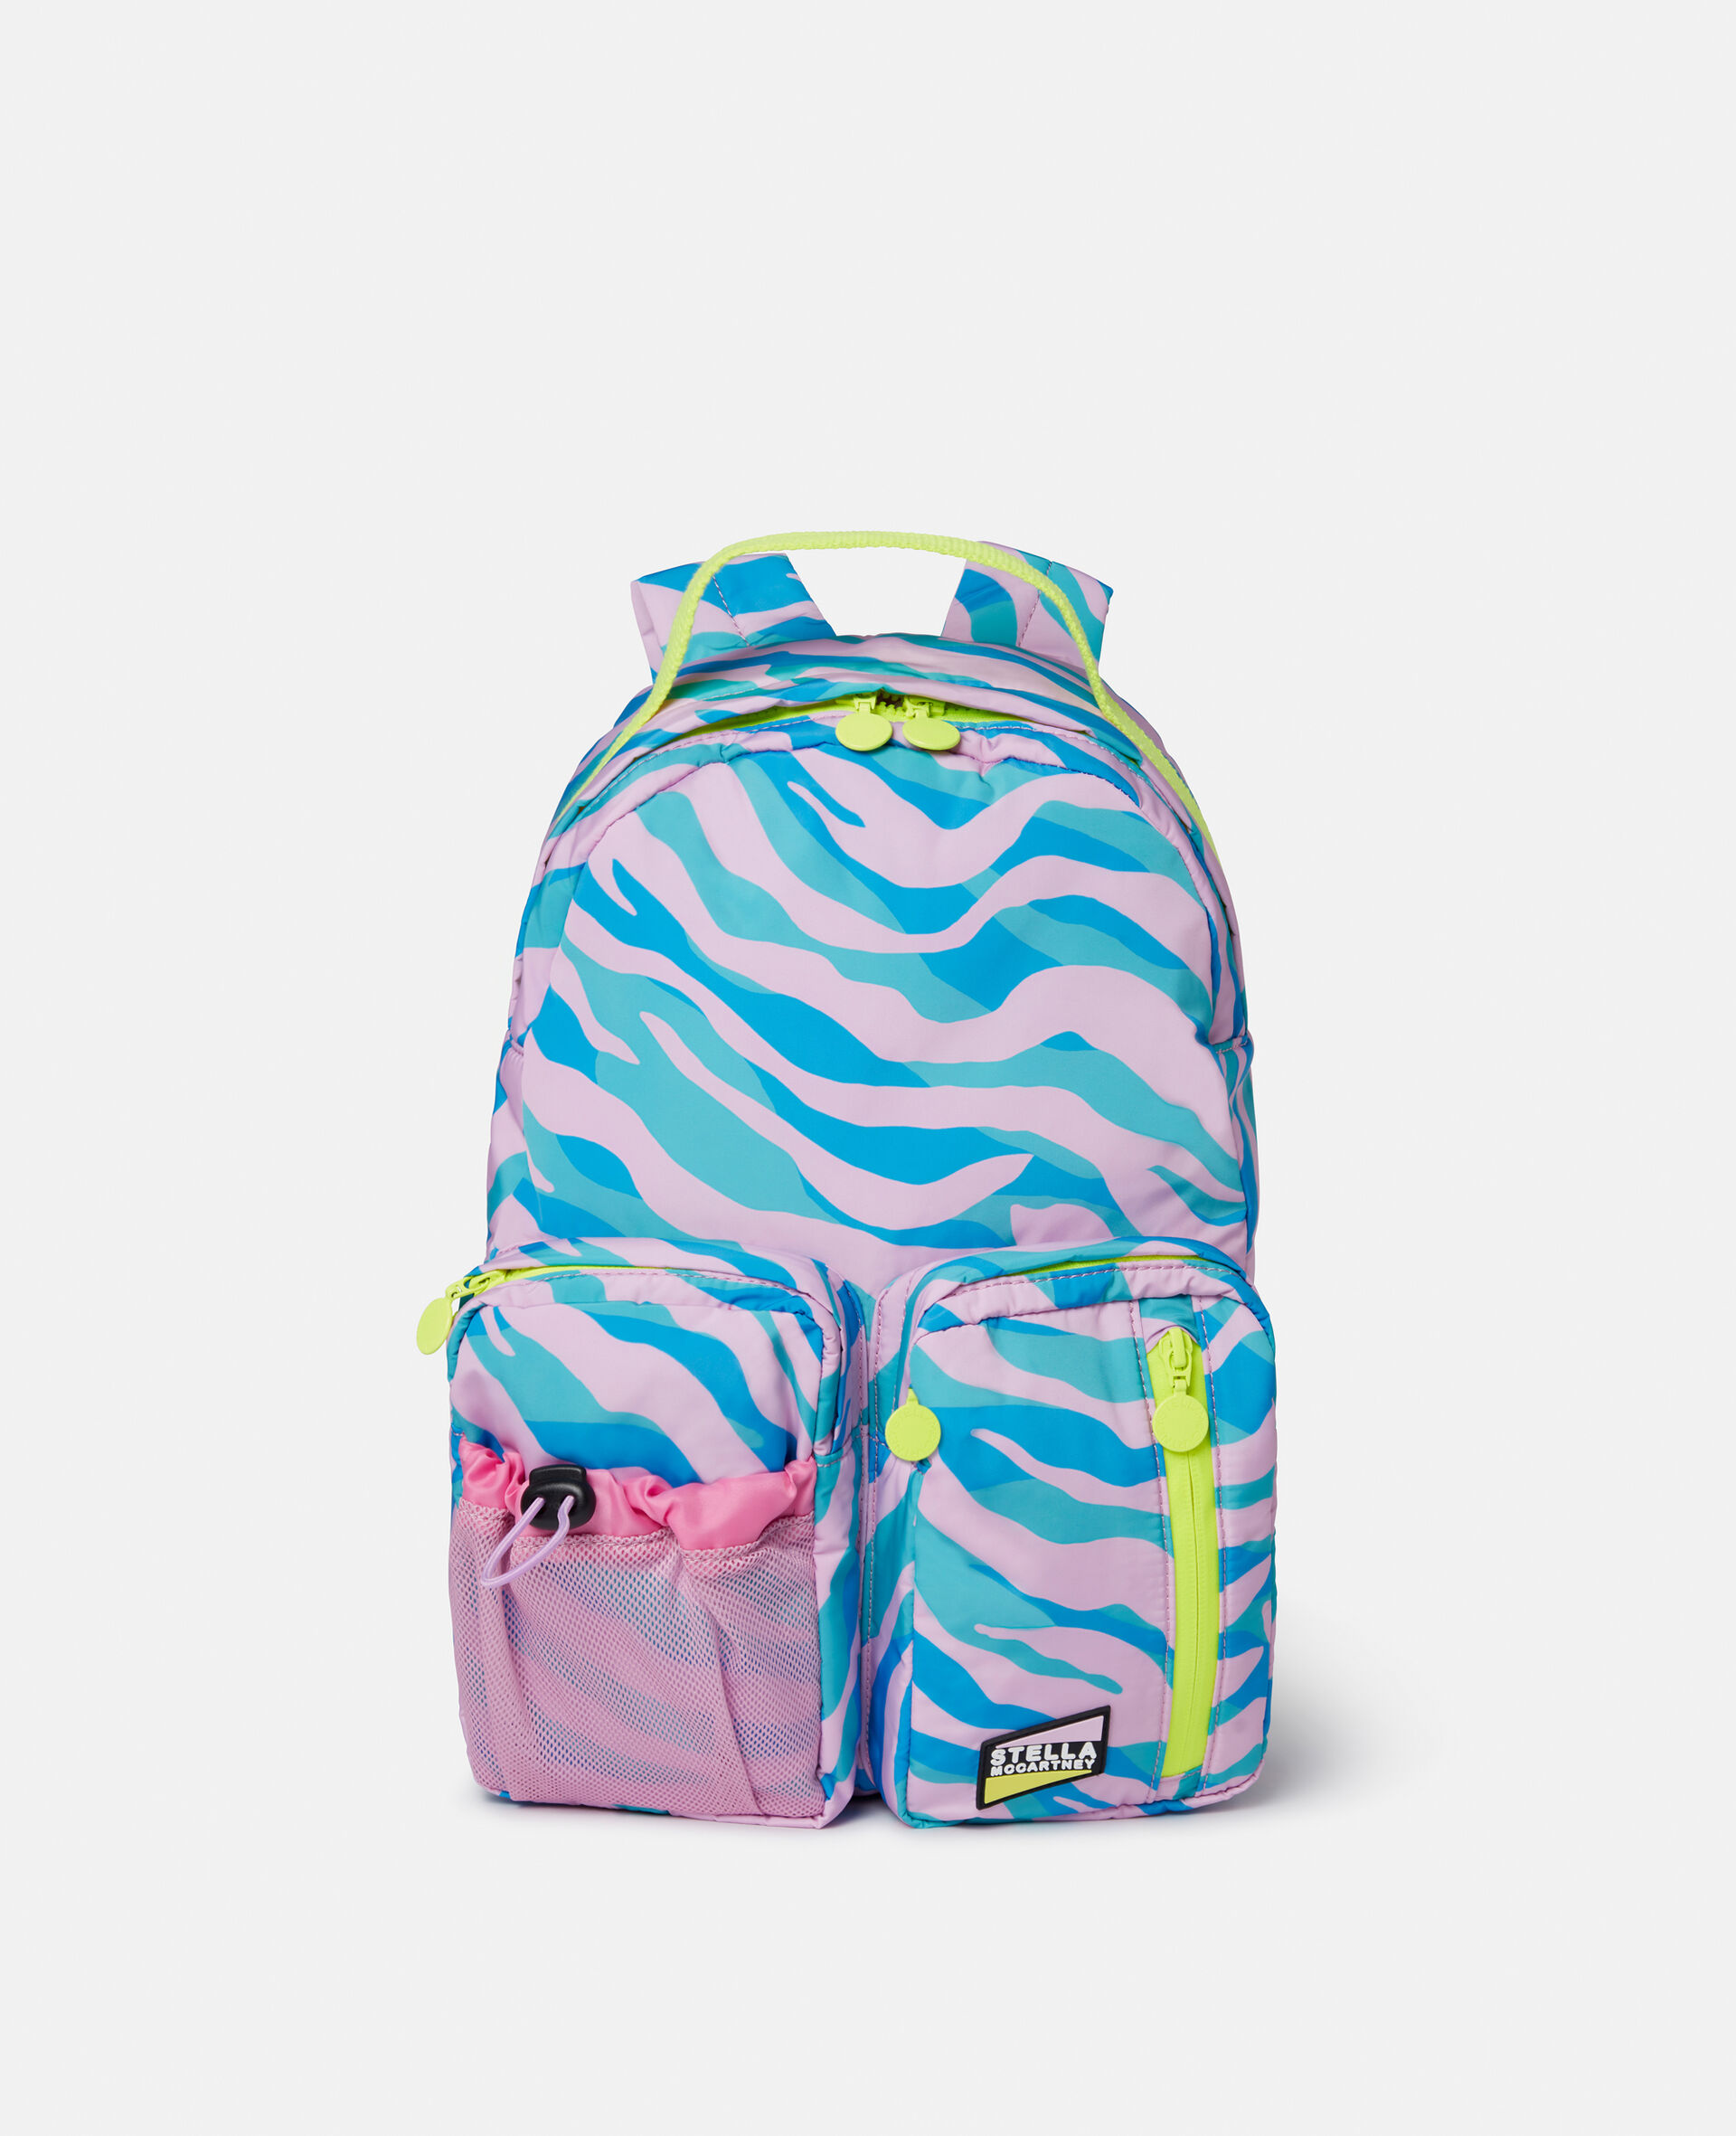 Zebra Print Backpack-Multicoloured-large image number 0